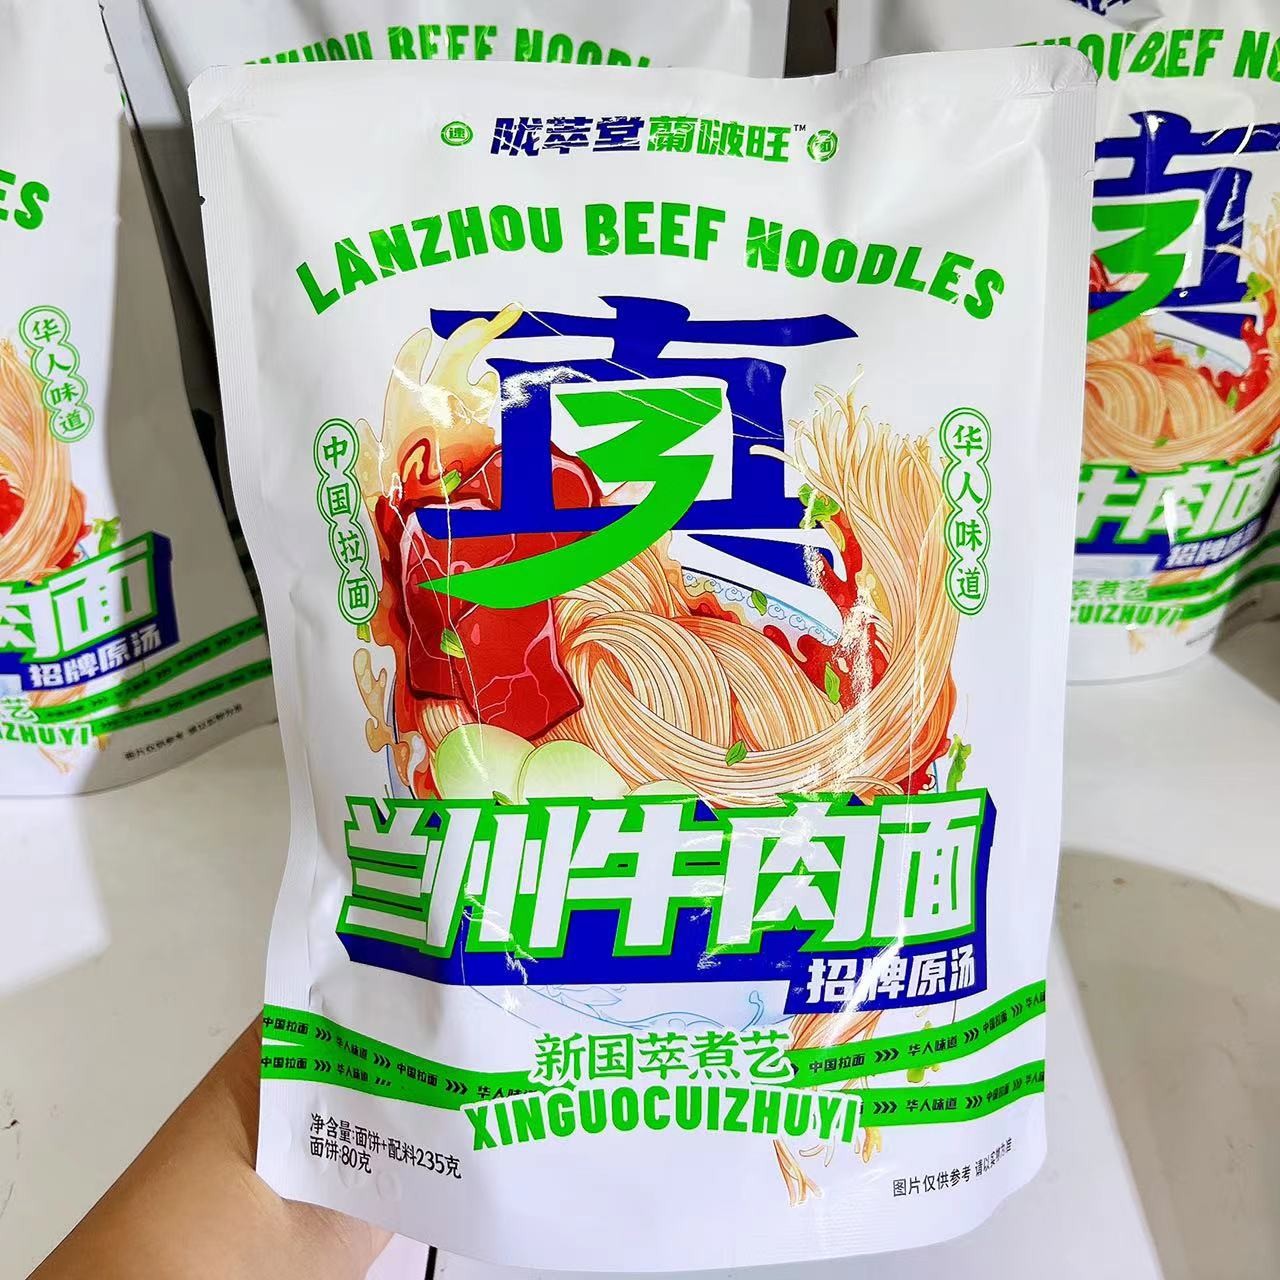 lanzhou-ramen-original-flavor-2-serving-pack